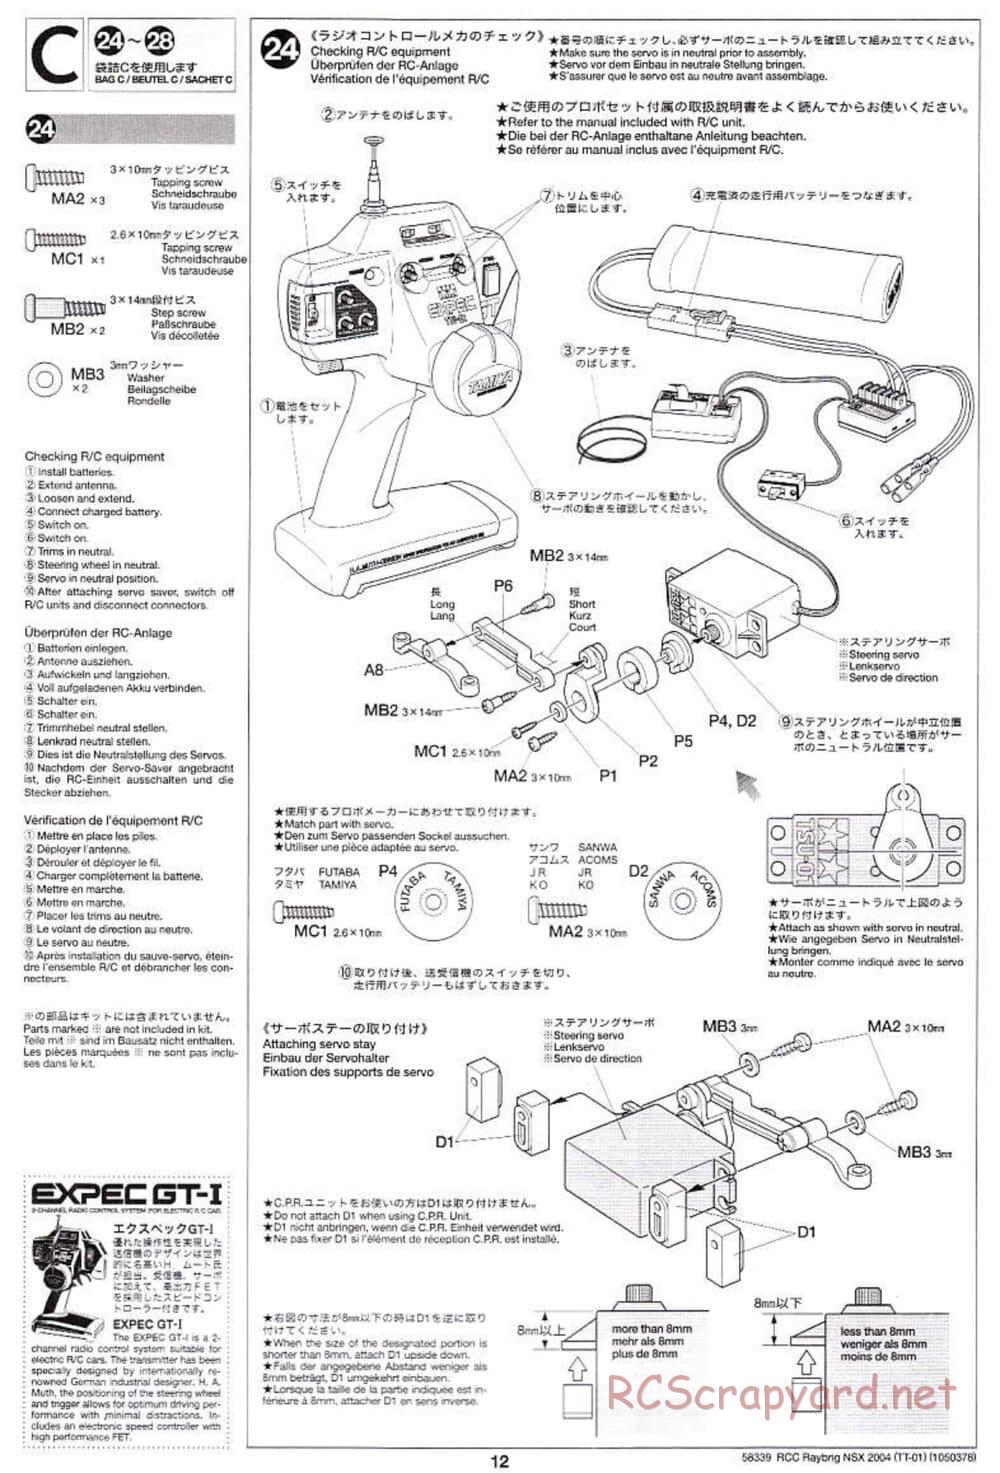 Tamiya - Raybrig NSX 2004 Chassis - Manual - Page 12